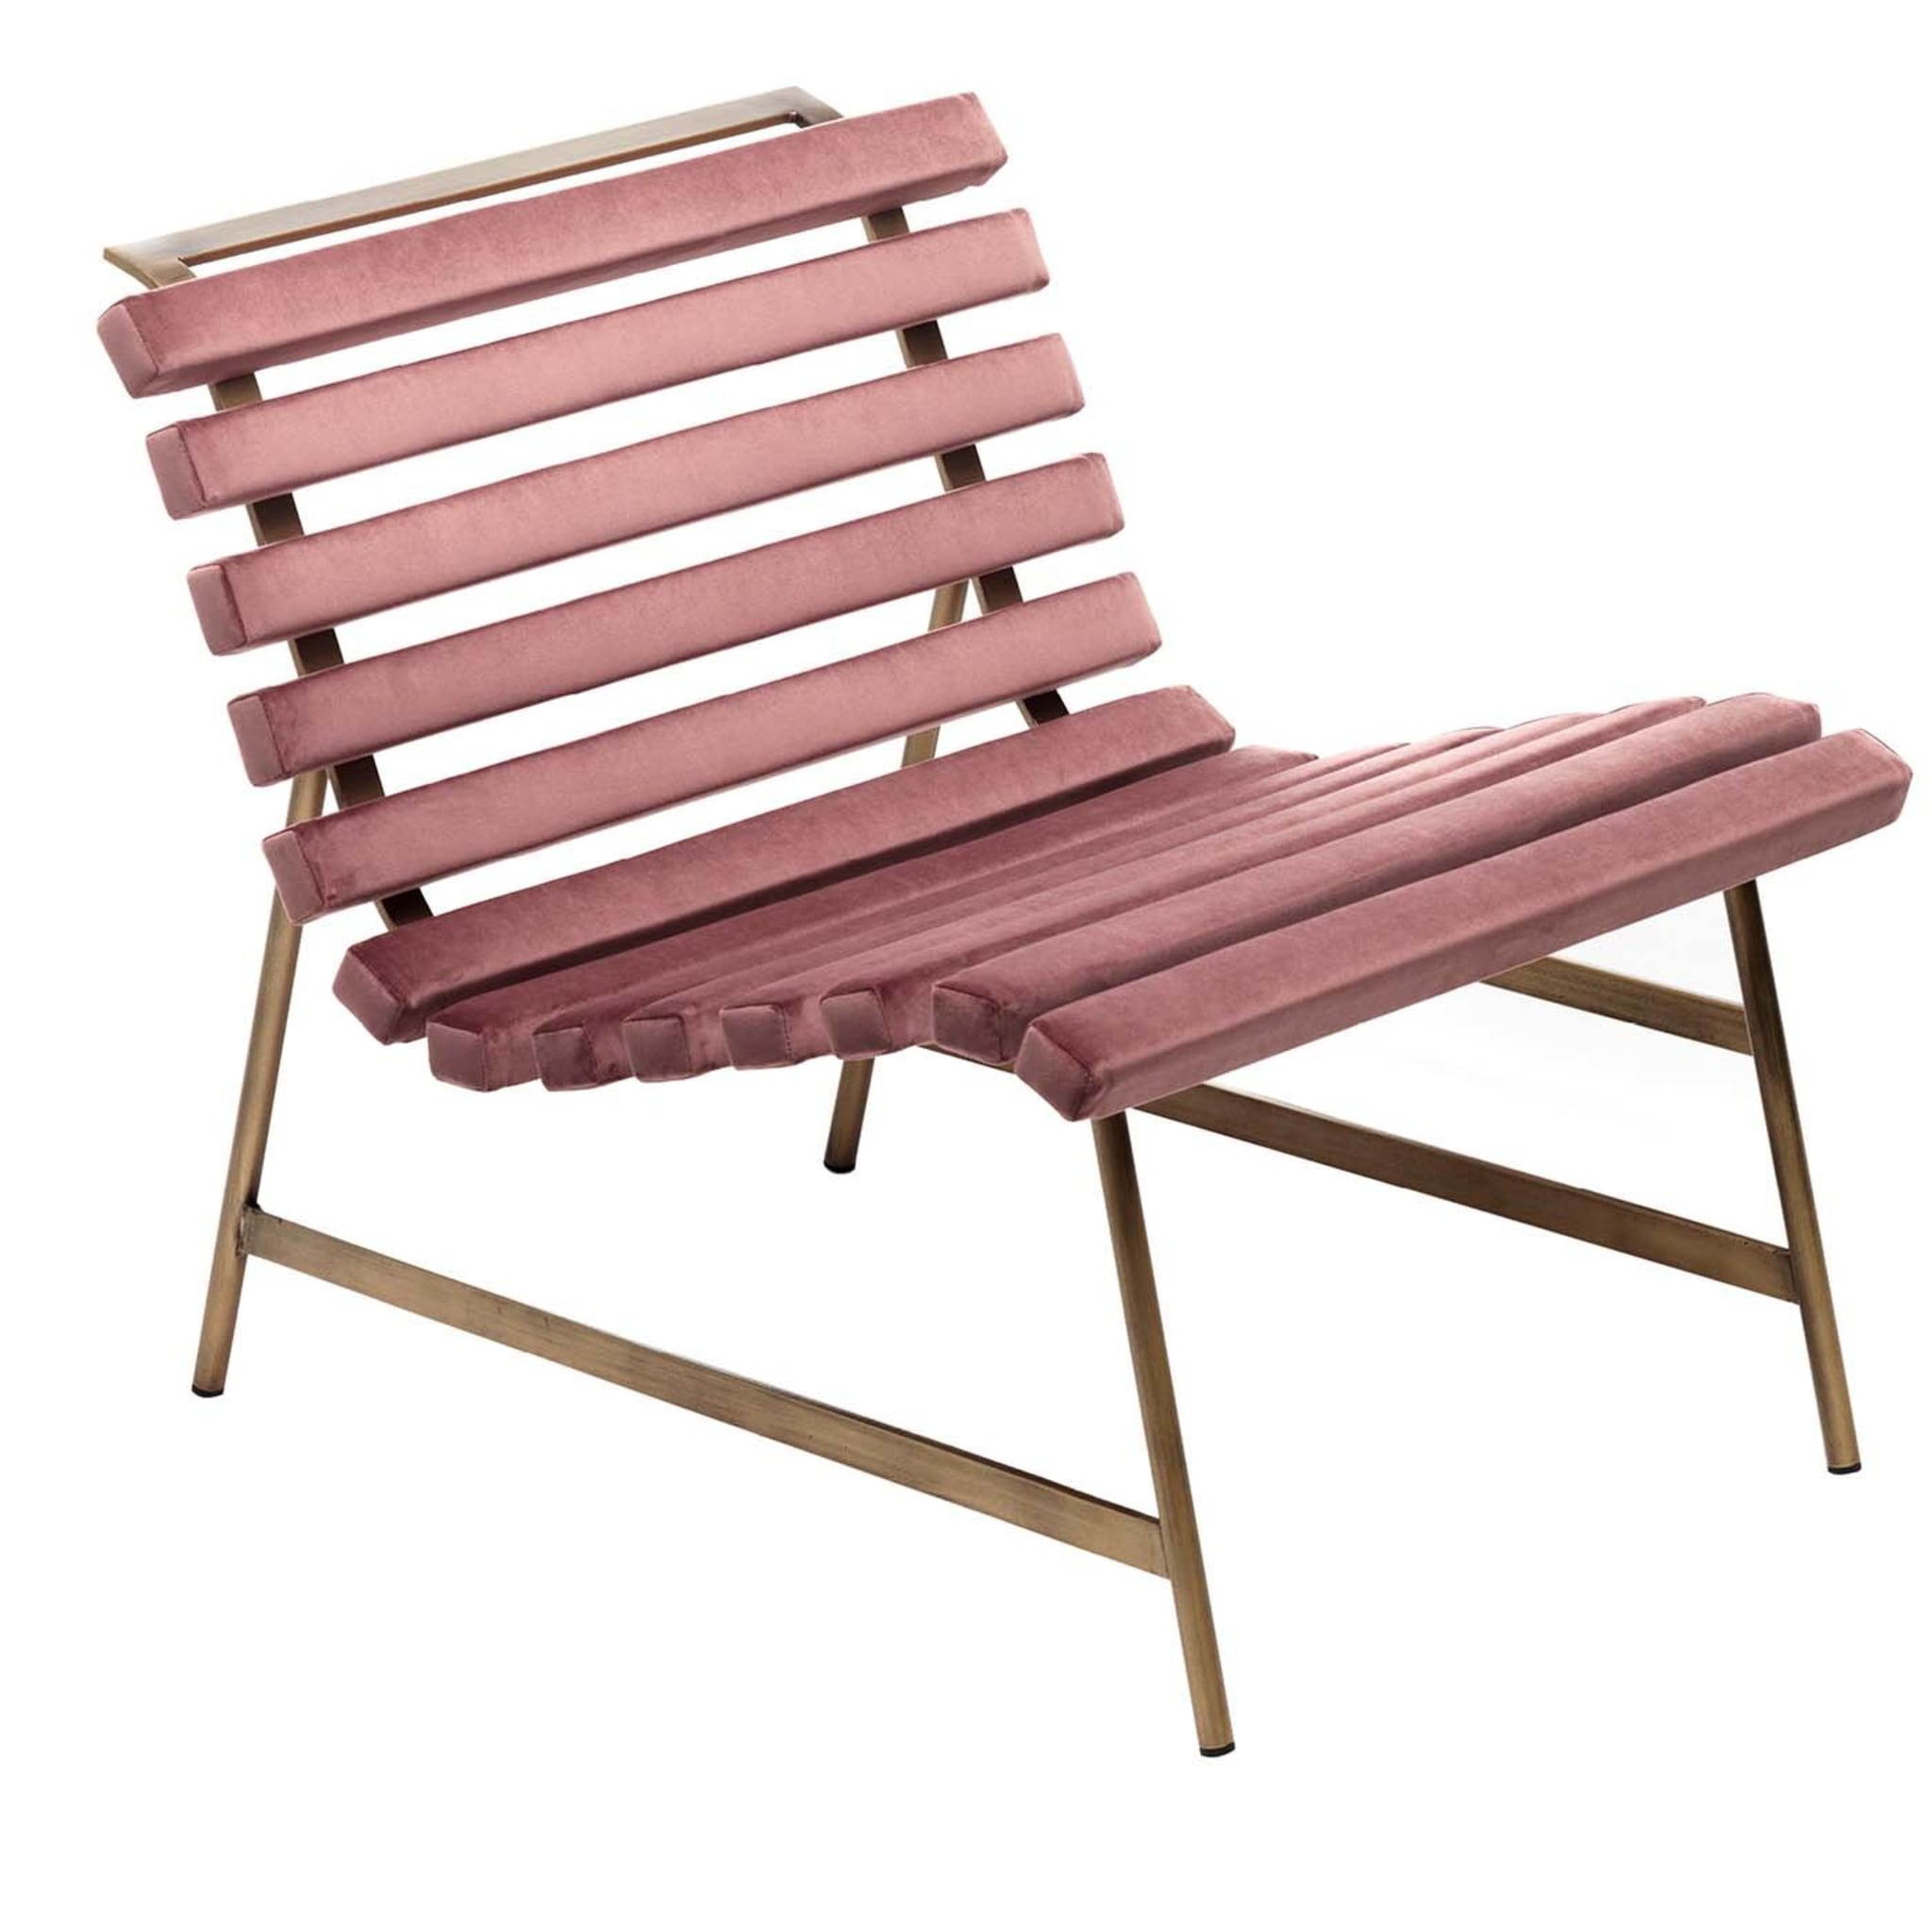 Giardinett Pink chair - Main view